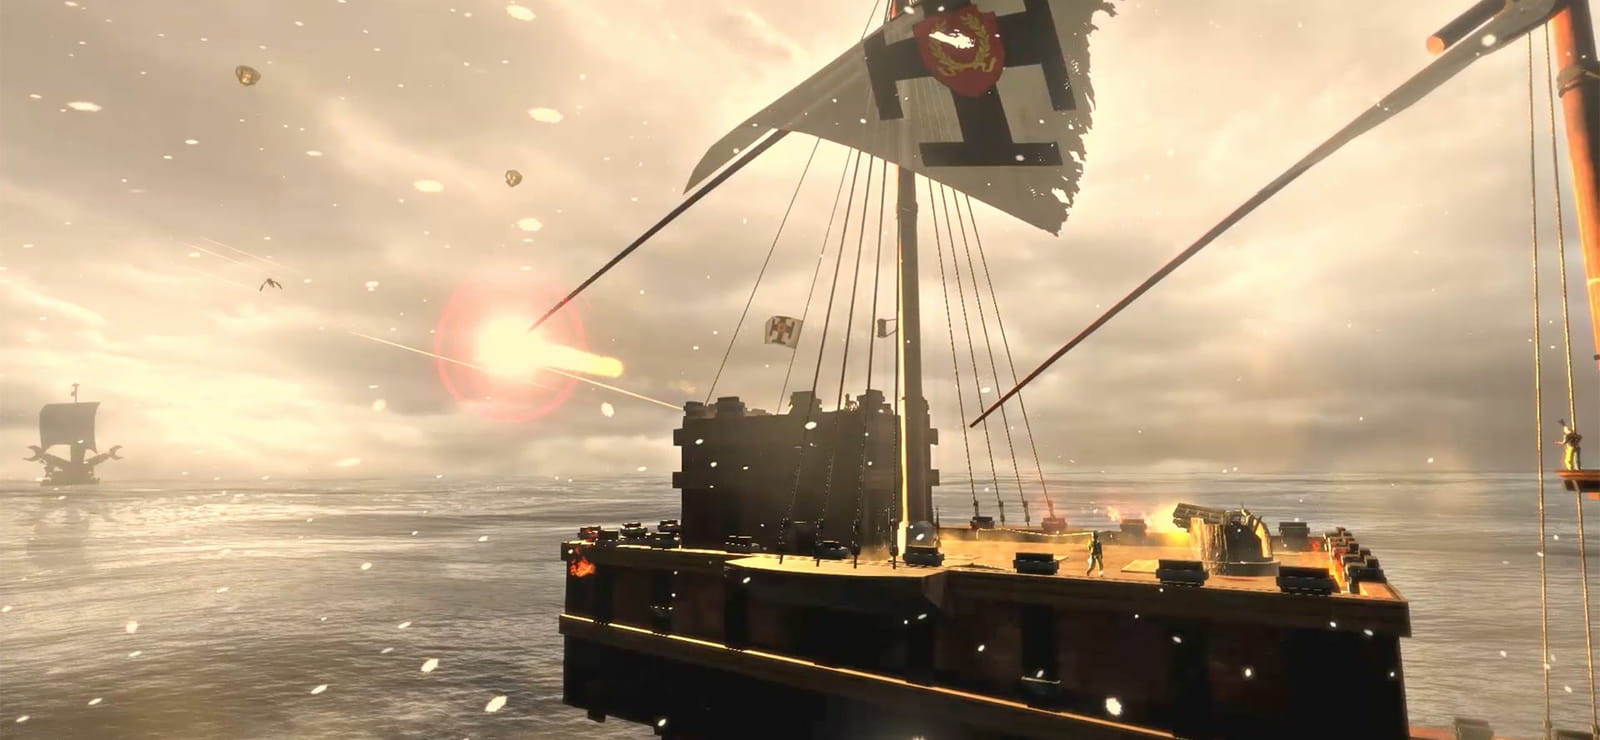 Man O' War: Corsair - Warhammer Naval Battles